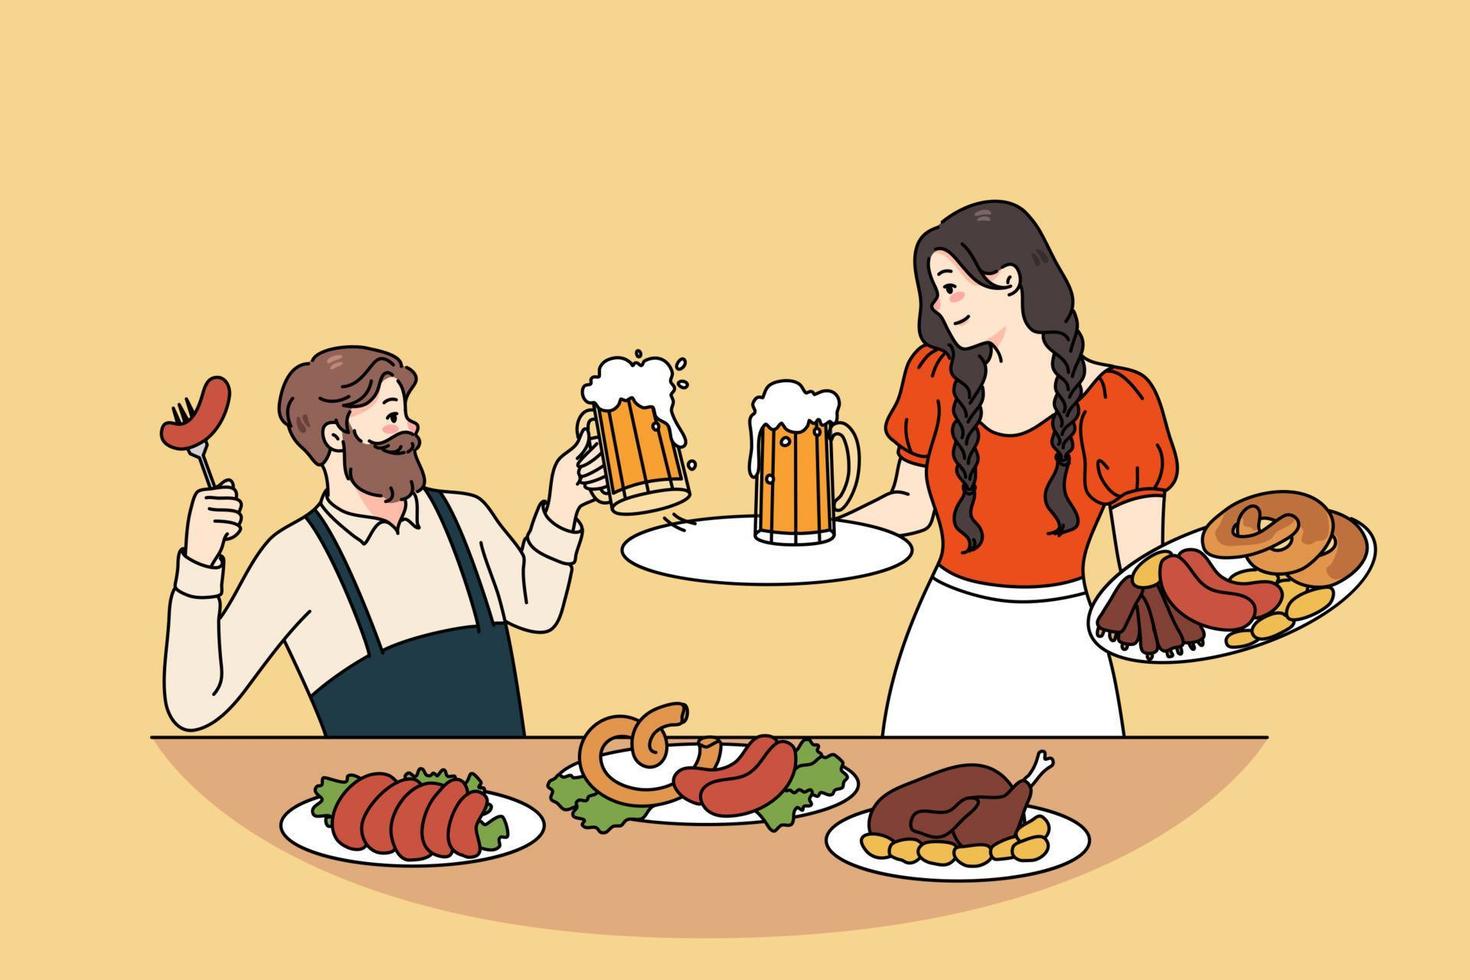 contento hombre y mujer en tradicional ropa celebrar Oktoberfest bebida cerveza comer salchichas sonriente chico y niña disfrutar alemán festival celebraciones al aire libre. plano vector ilustración.